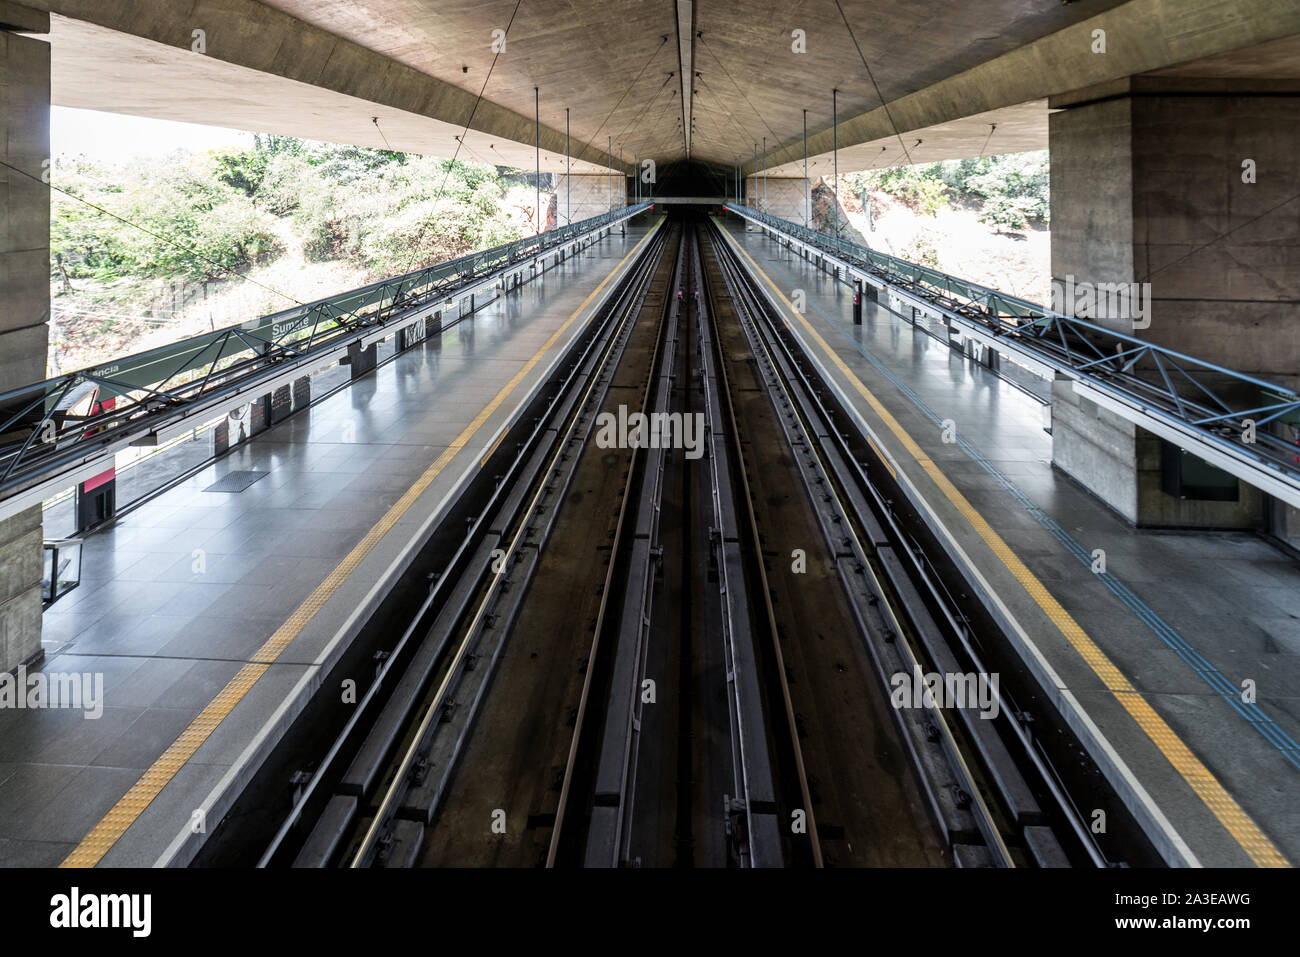 SAO PAULO, BRÉSIL - 05 octobre, 2019 : horizontale photo d'architecture étonnante de la station de métro Sumaré, situé à Sao Paulo, Brésil Banque D'Images